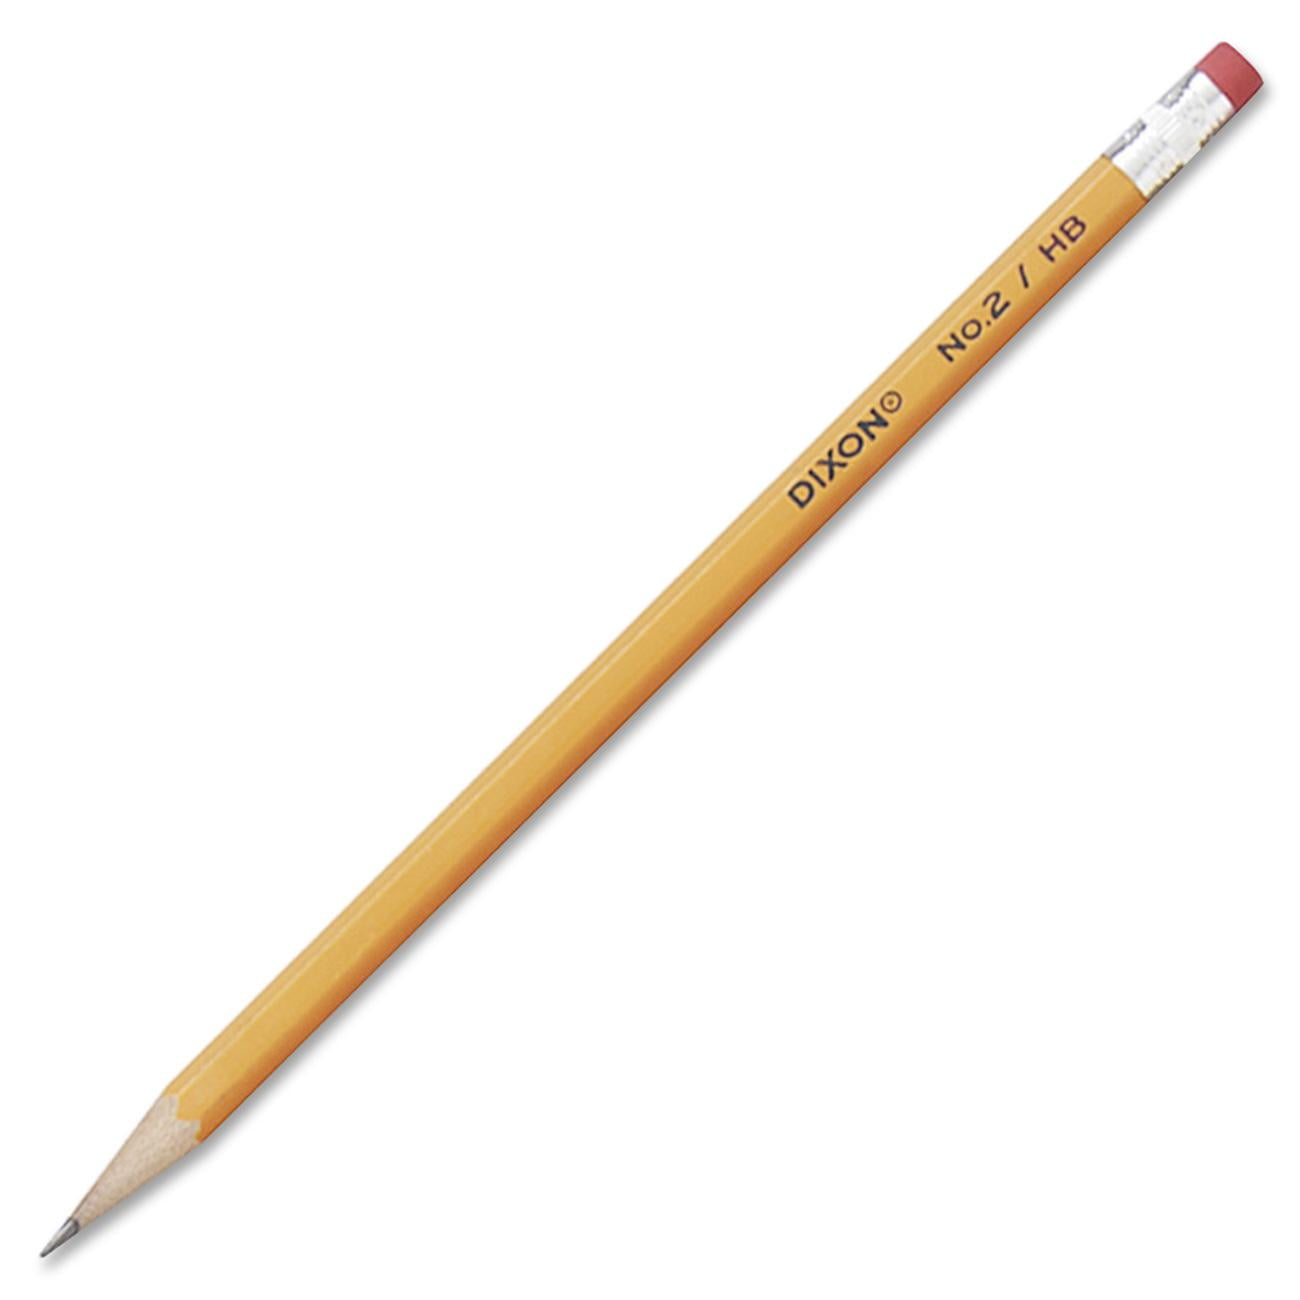 Pencil2d. Five Yellow Pencils. Go pencil